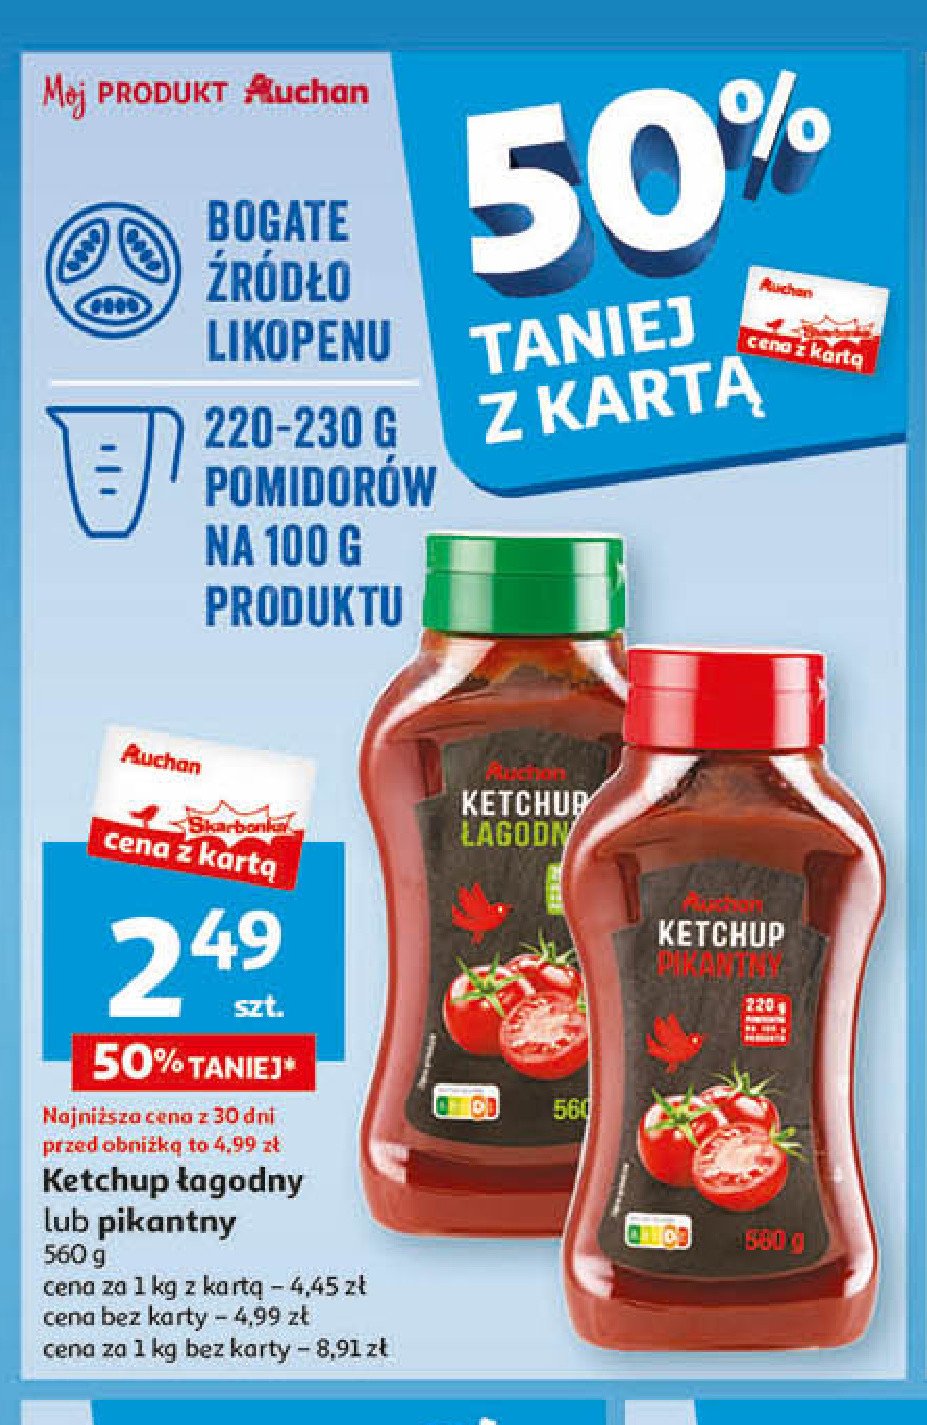 Ketchup łagodny Auchan różnorodne (logo czerwone) promocja